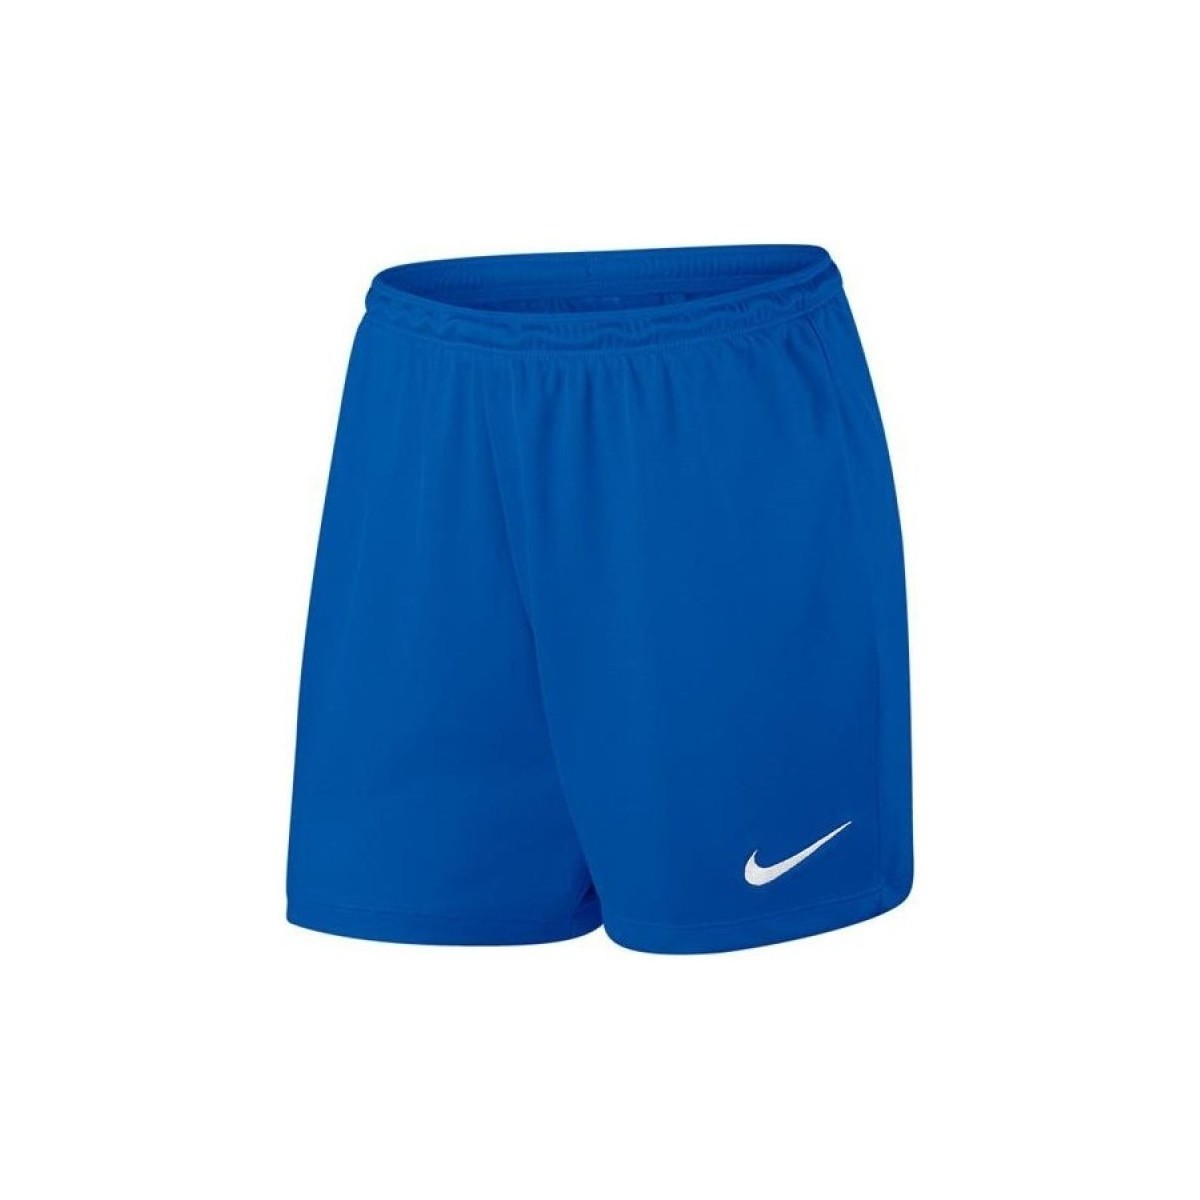 Îmbracaminte Bărbați Pantaloni trei sferturi Nike Park Short albastru